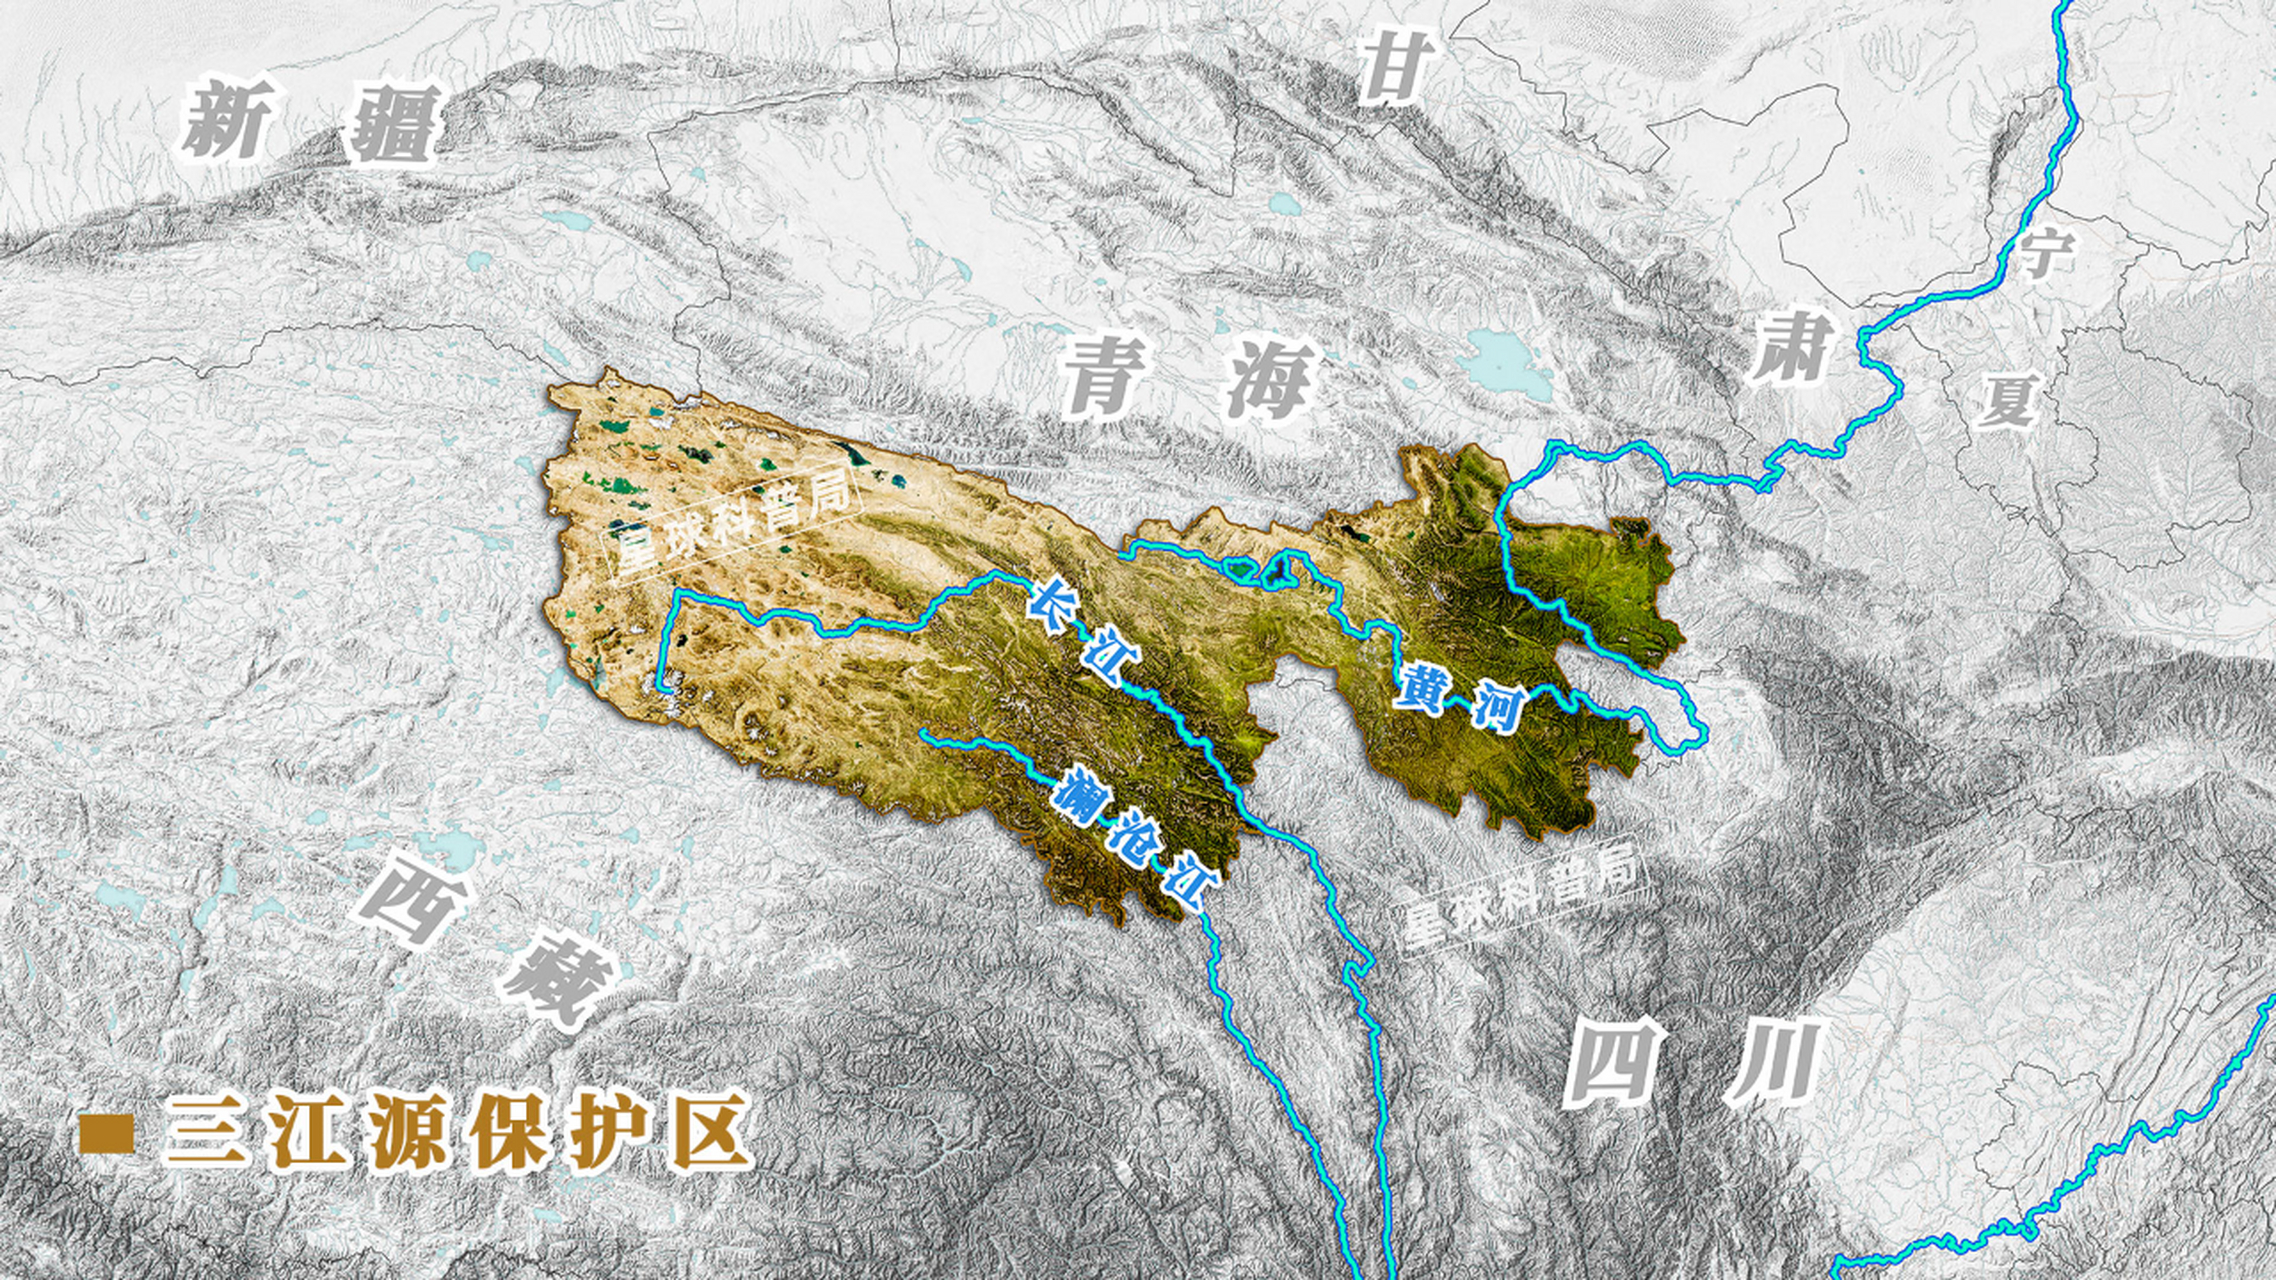 三江源地区山脉图图片